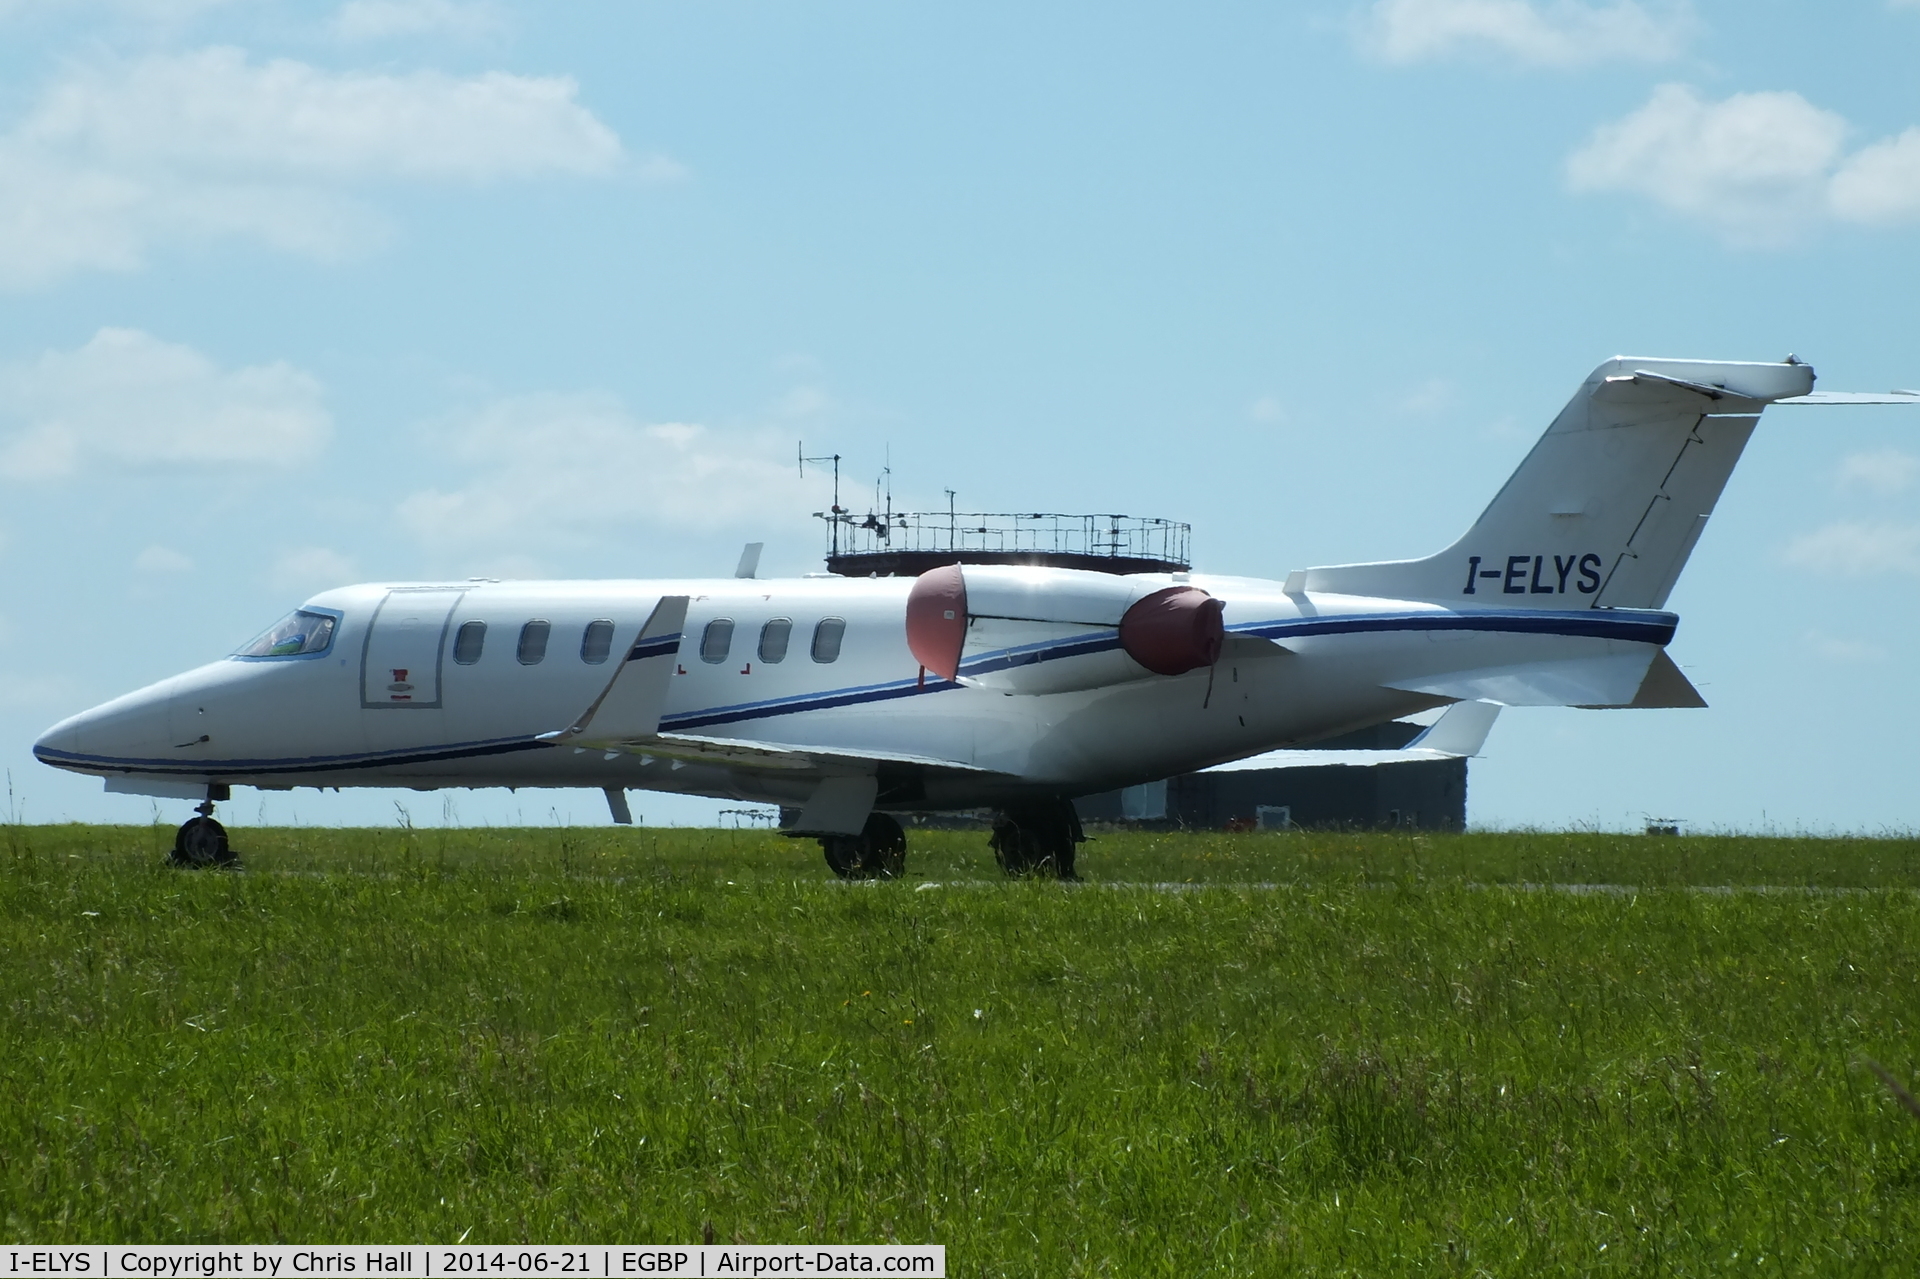 I-ELYS, 2005 Learjet 45 C/N 45-2016, Eurofly Service